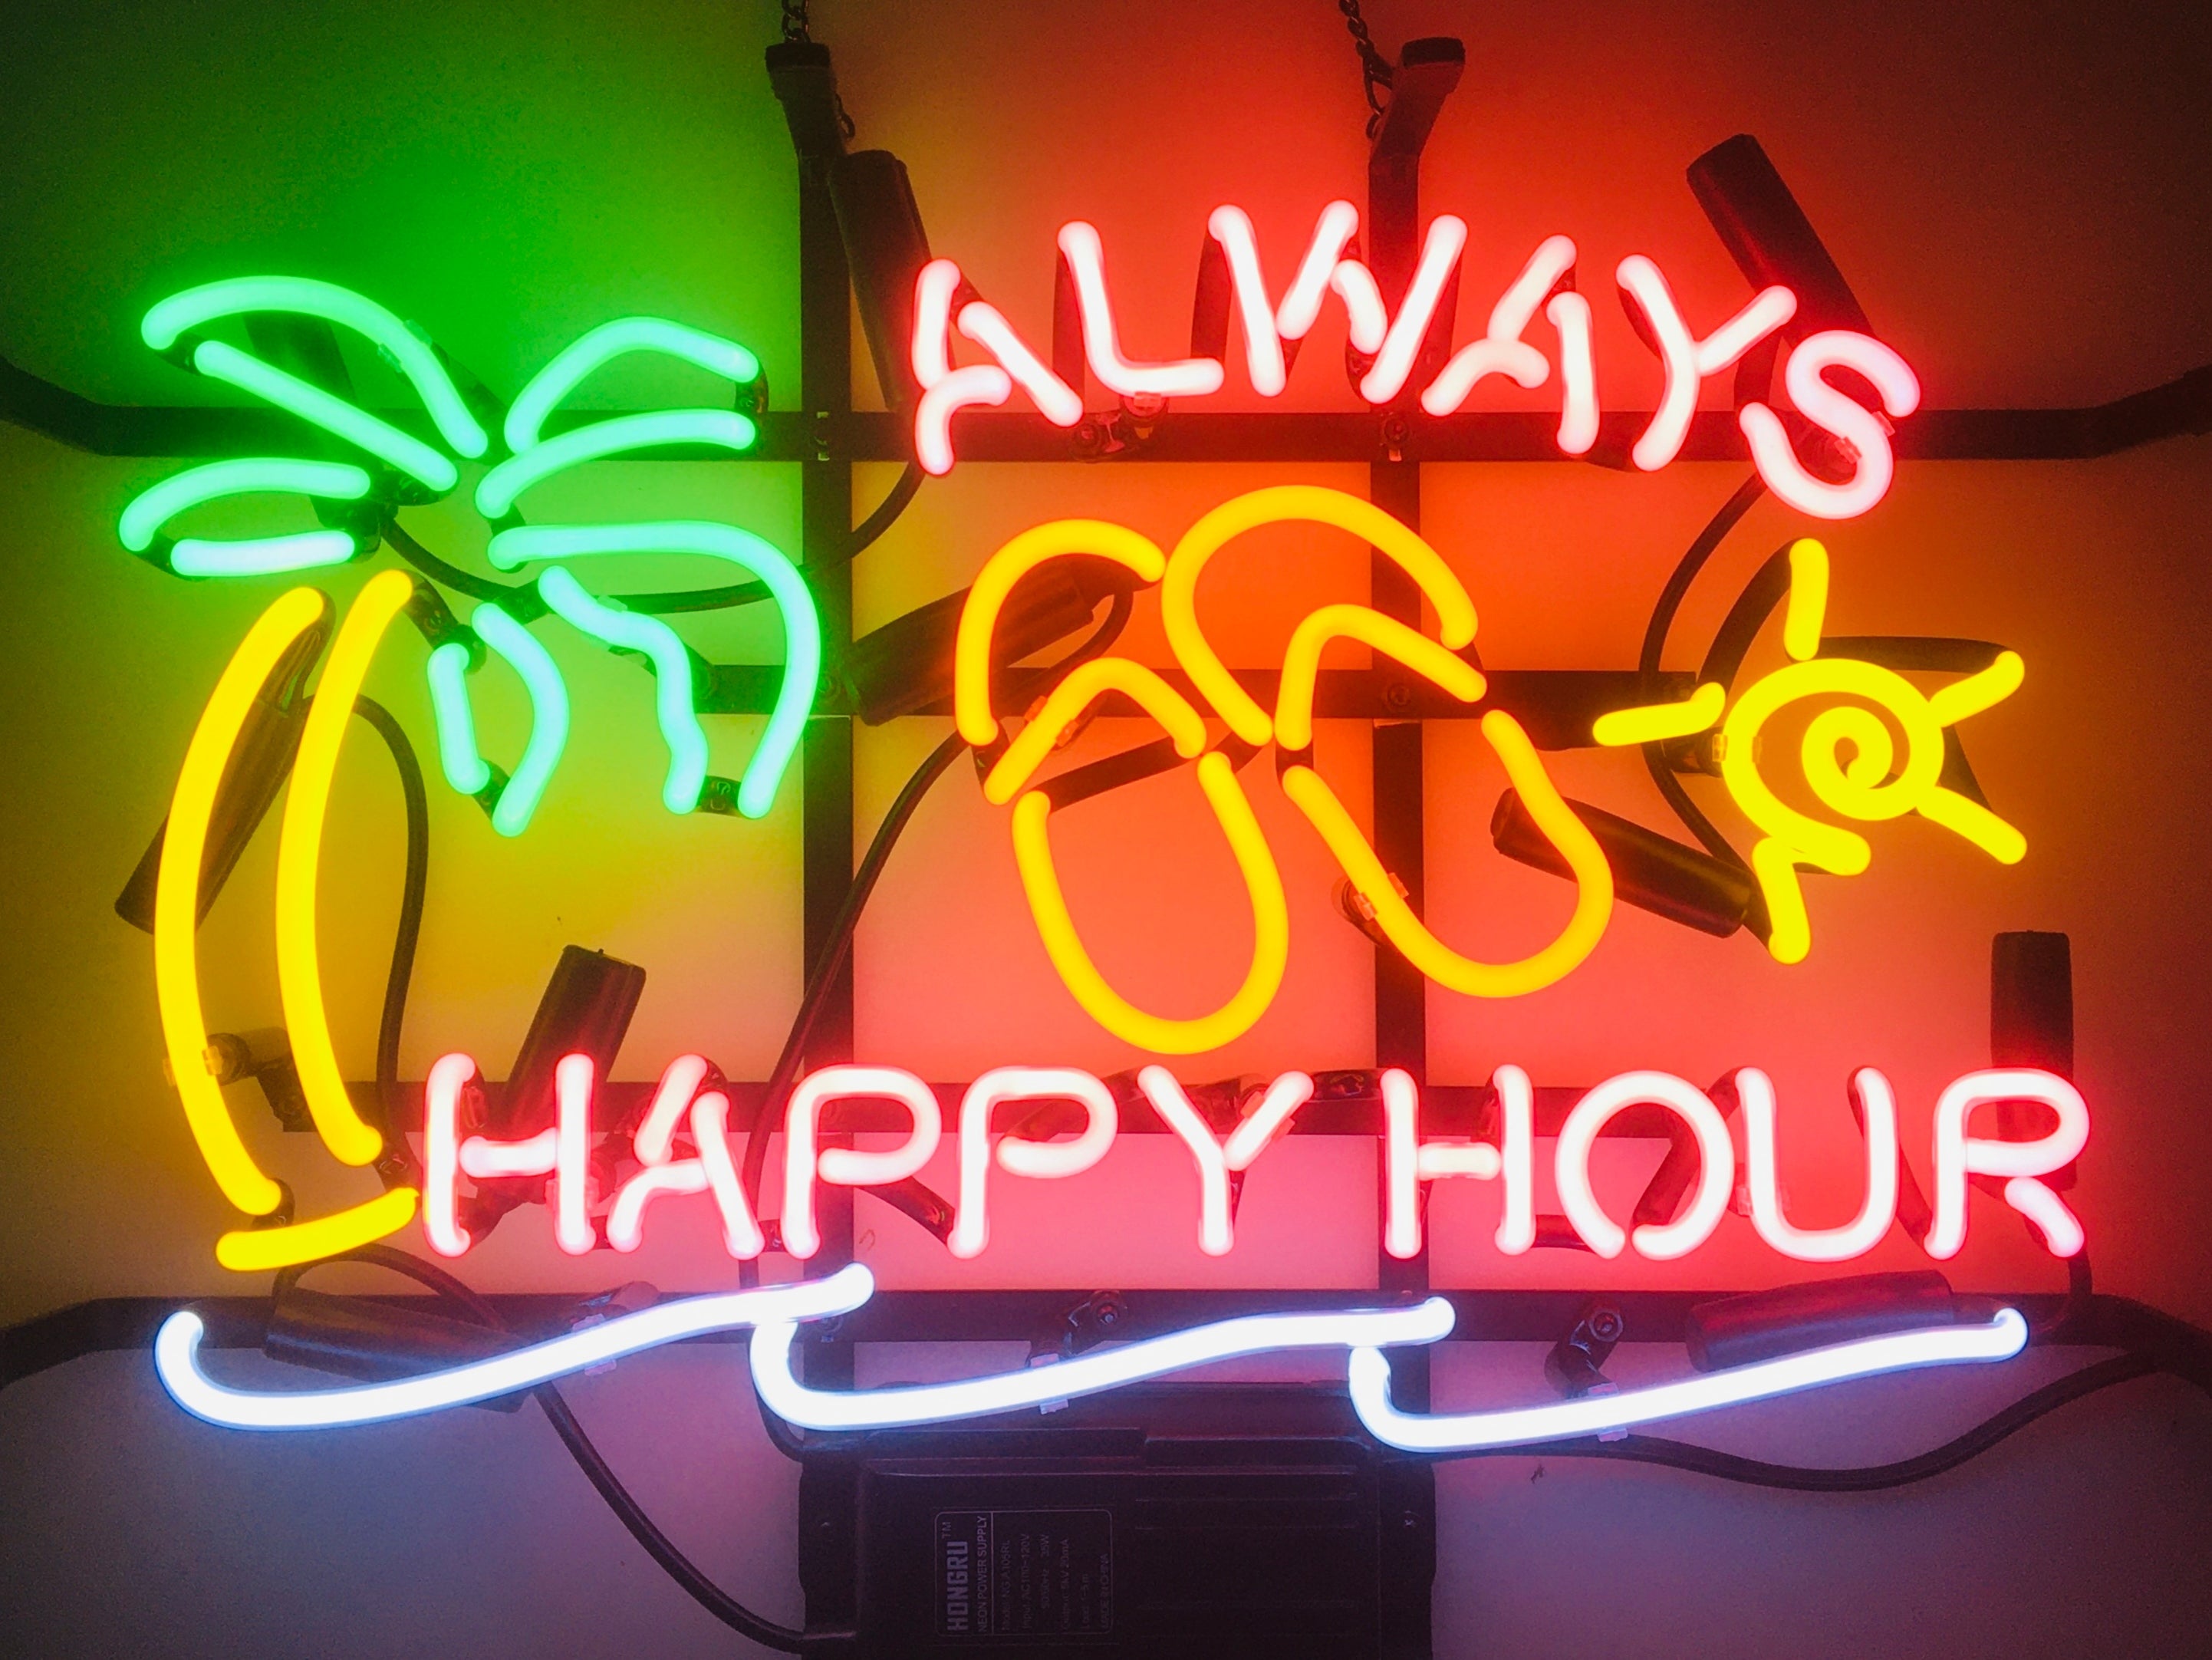 LDGJ Always happy hour,Neon Sign Handmade Glass